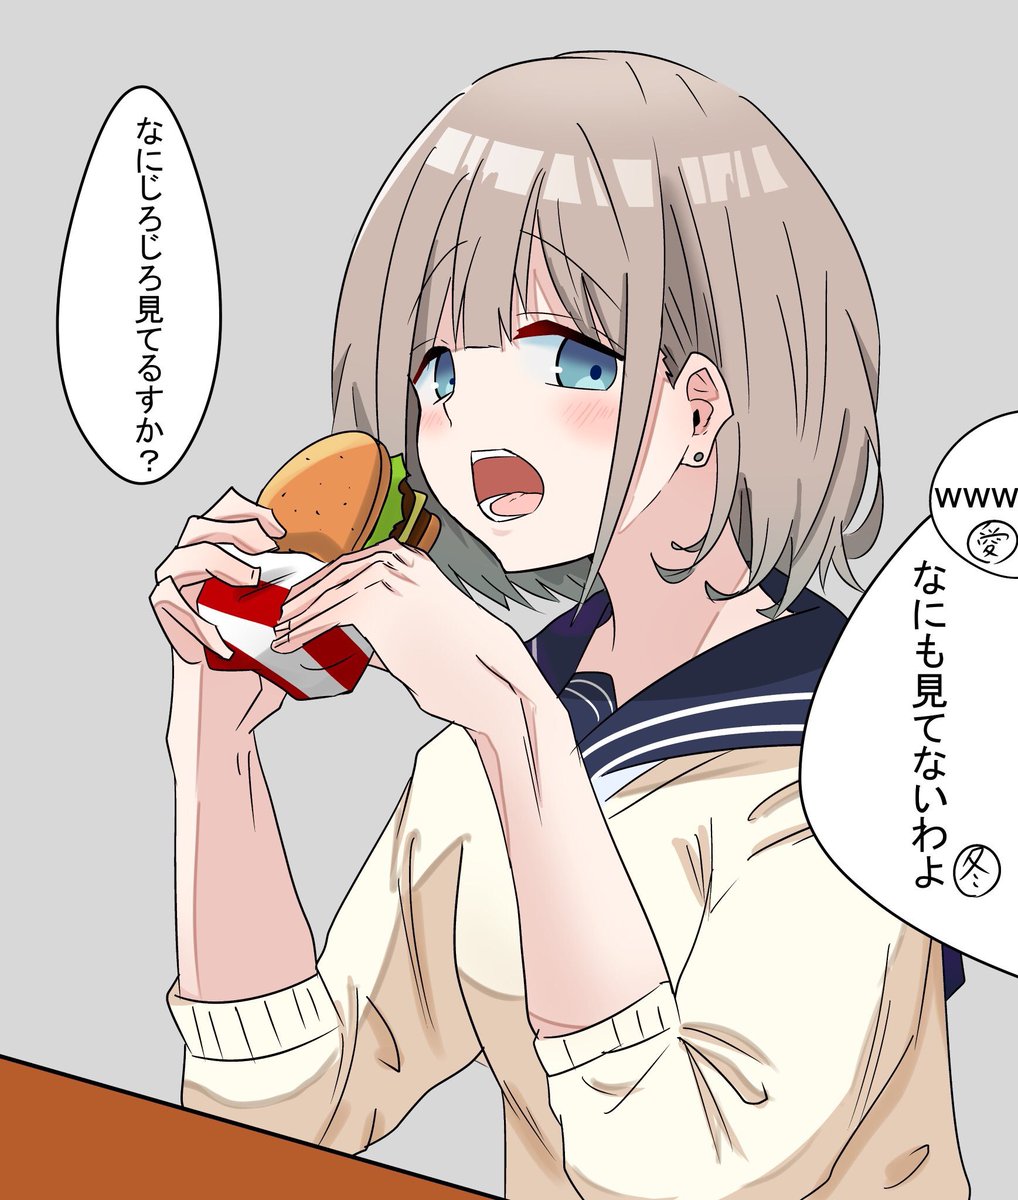 誕生日なのでハンバーガー死ぬほど食べてもらいたい。
#芹沢あさひ生誕祭2020
#芹沢あさひ生誕祭 